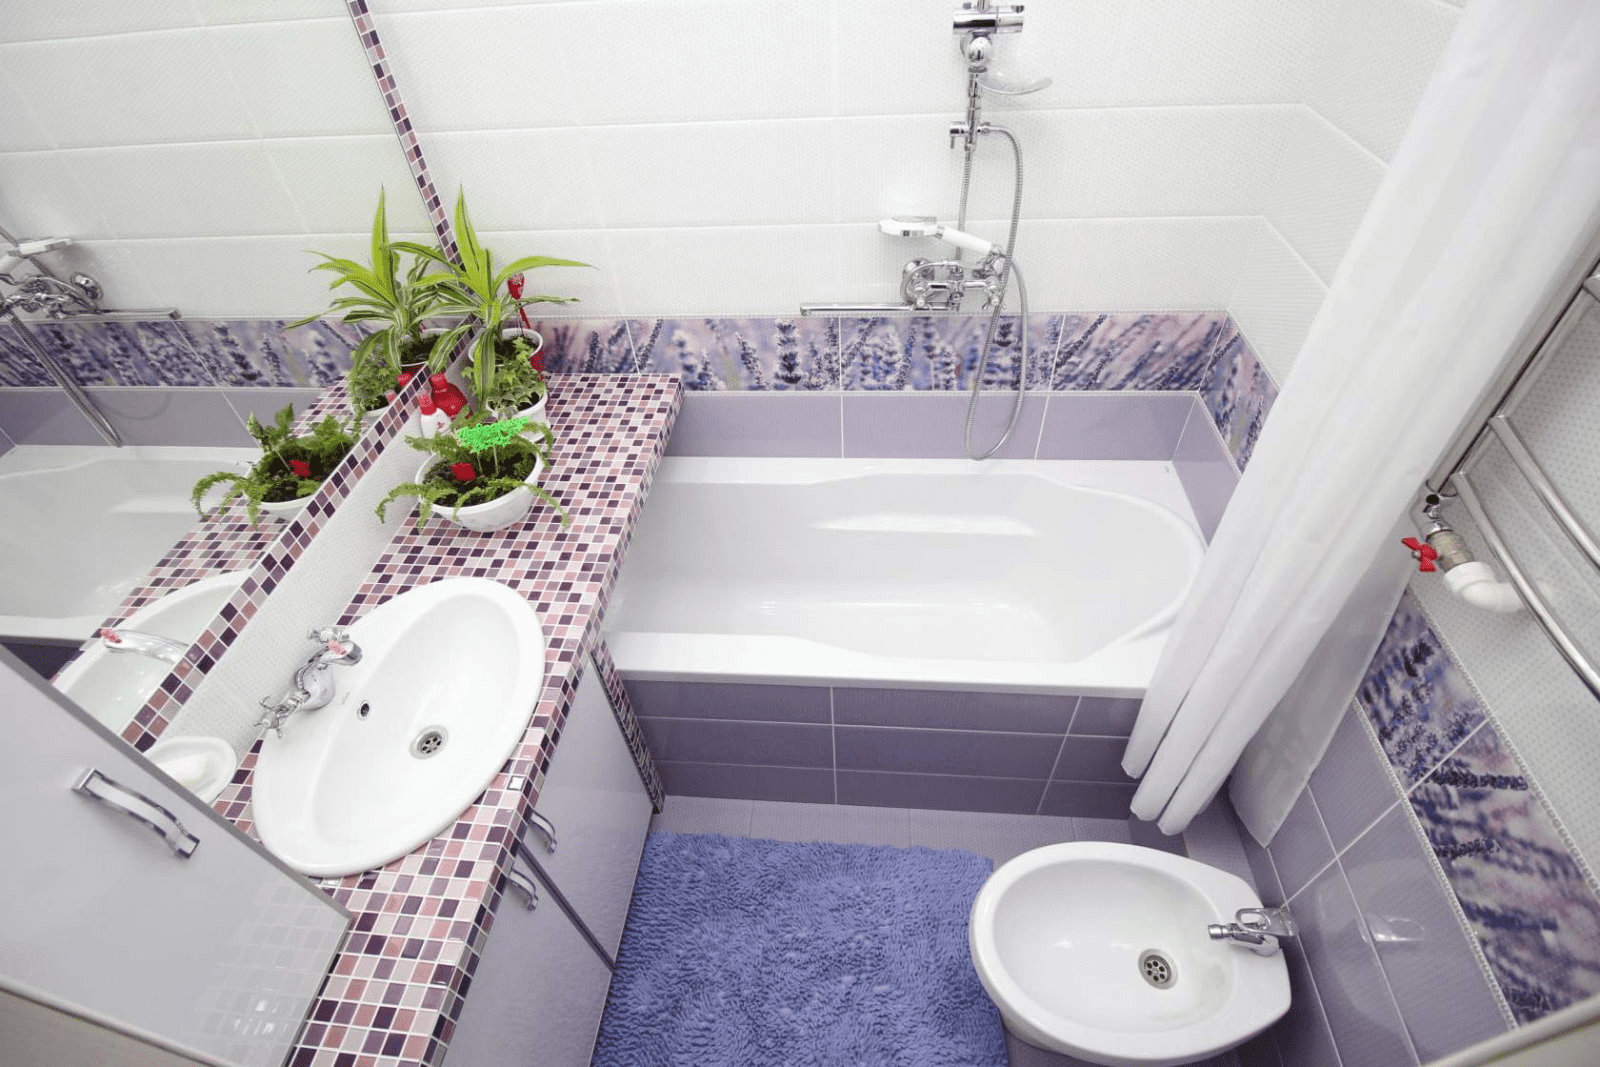 Дизайн ванной комнаты в хрущевке без туалета: фото идей. правила проведения ремонта в хрущевке ванной. как отремонтировать ванную в хрущевке